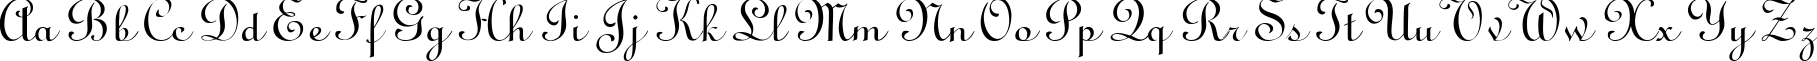 Пример написания английского алфавита шрифтом LinoScript